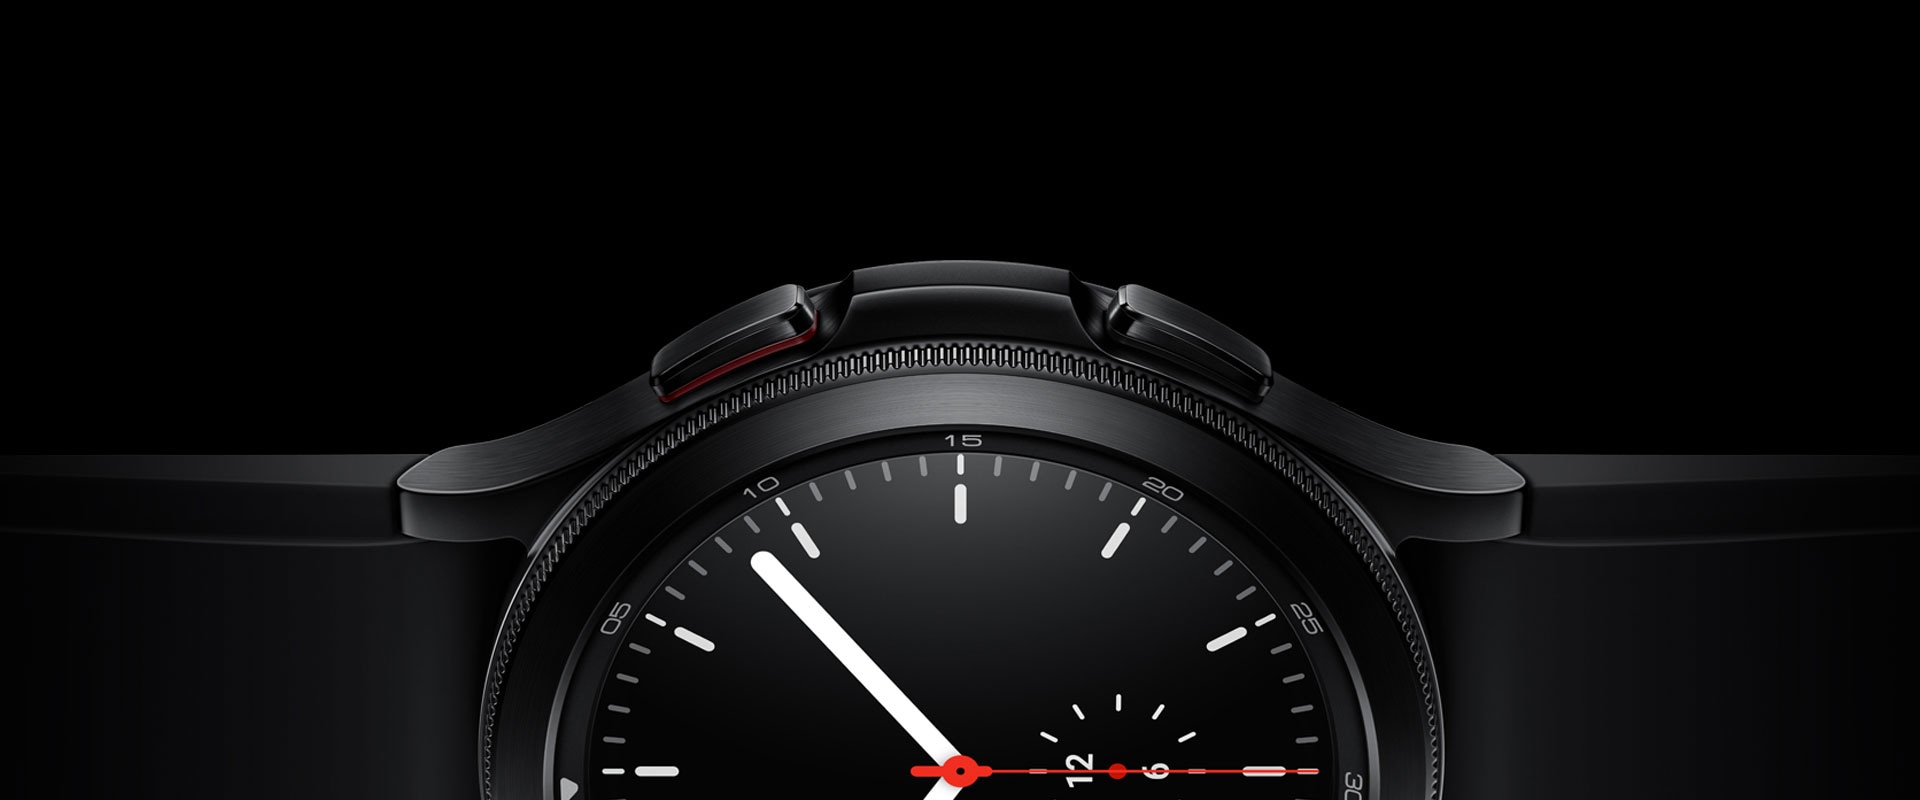 يظهر نصف جانب تصميم الشاشة الرئيسية من الساعة Galaxy Watch4 Classic باللون الأسود بصورة بارزة، مع التركيز على الإطار والمواد وشاشة تصميم الشاشة الرئيسية البسيطة التي تعرض الوقت.